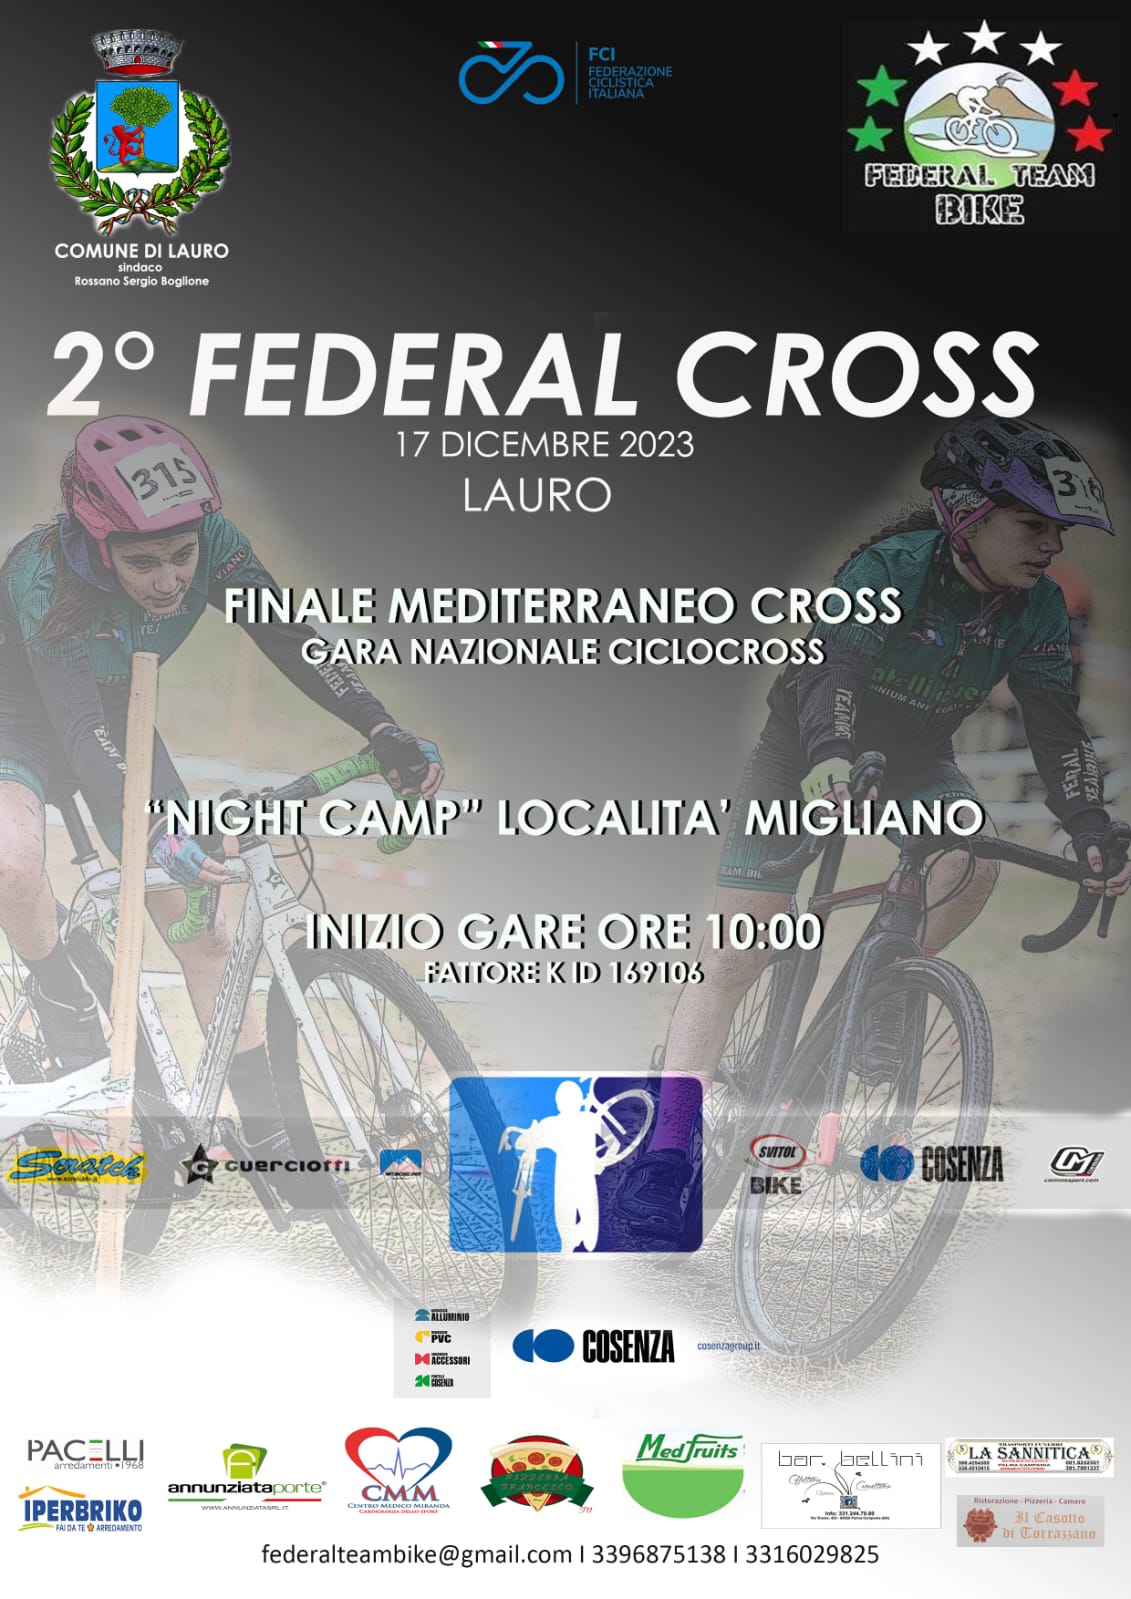 Federal Cross: La Scuola di Ciclismo di Taurano sfida il terreno a Migliano per la Tappa Finale del Trofeo Mediterraneo Cross